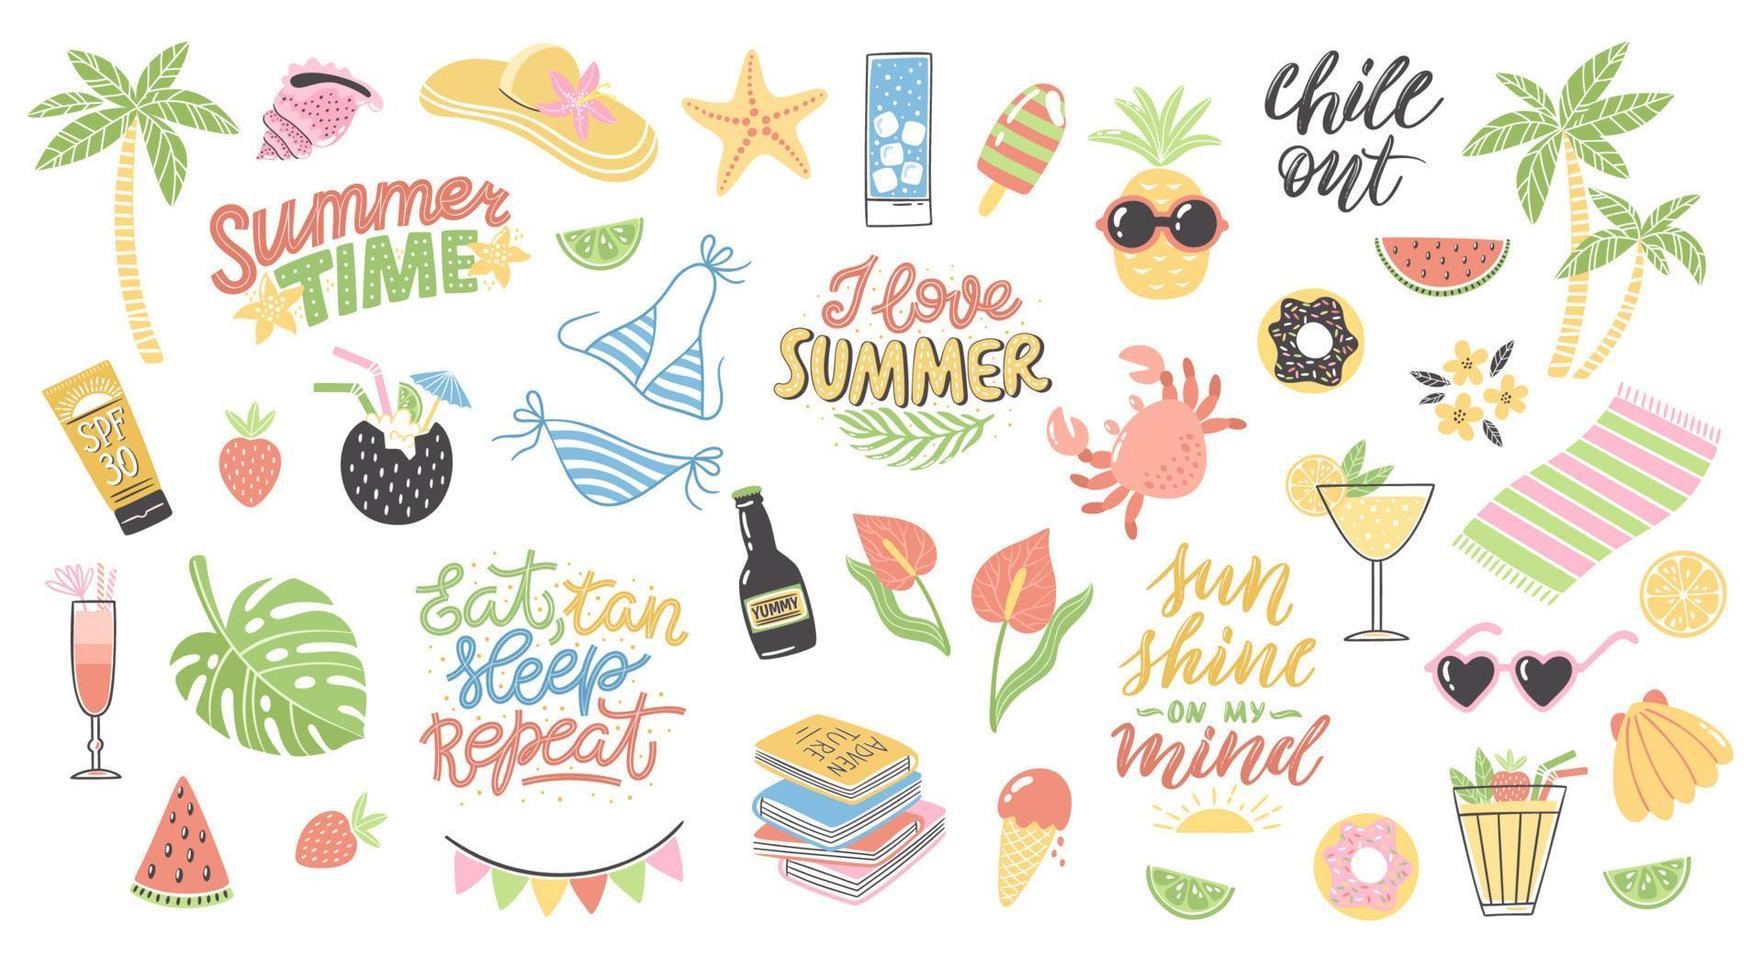 clipart de verão colorido com letras. decoração de férias desenhada à mão. design de ilustração vetorial isolado com elementos de verão como maiô, caranguejo, óculos de sol, coquetéis, rosquinha etc. vetor